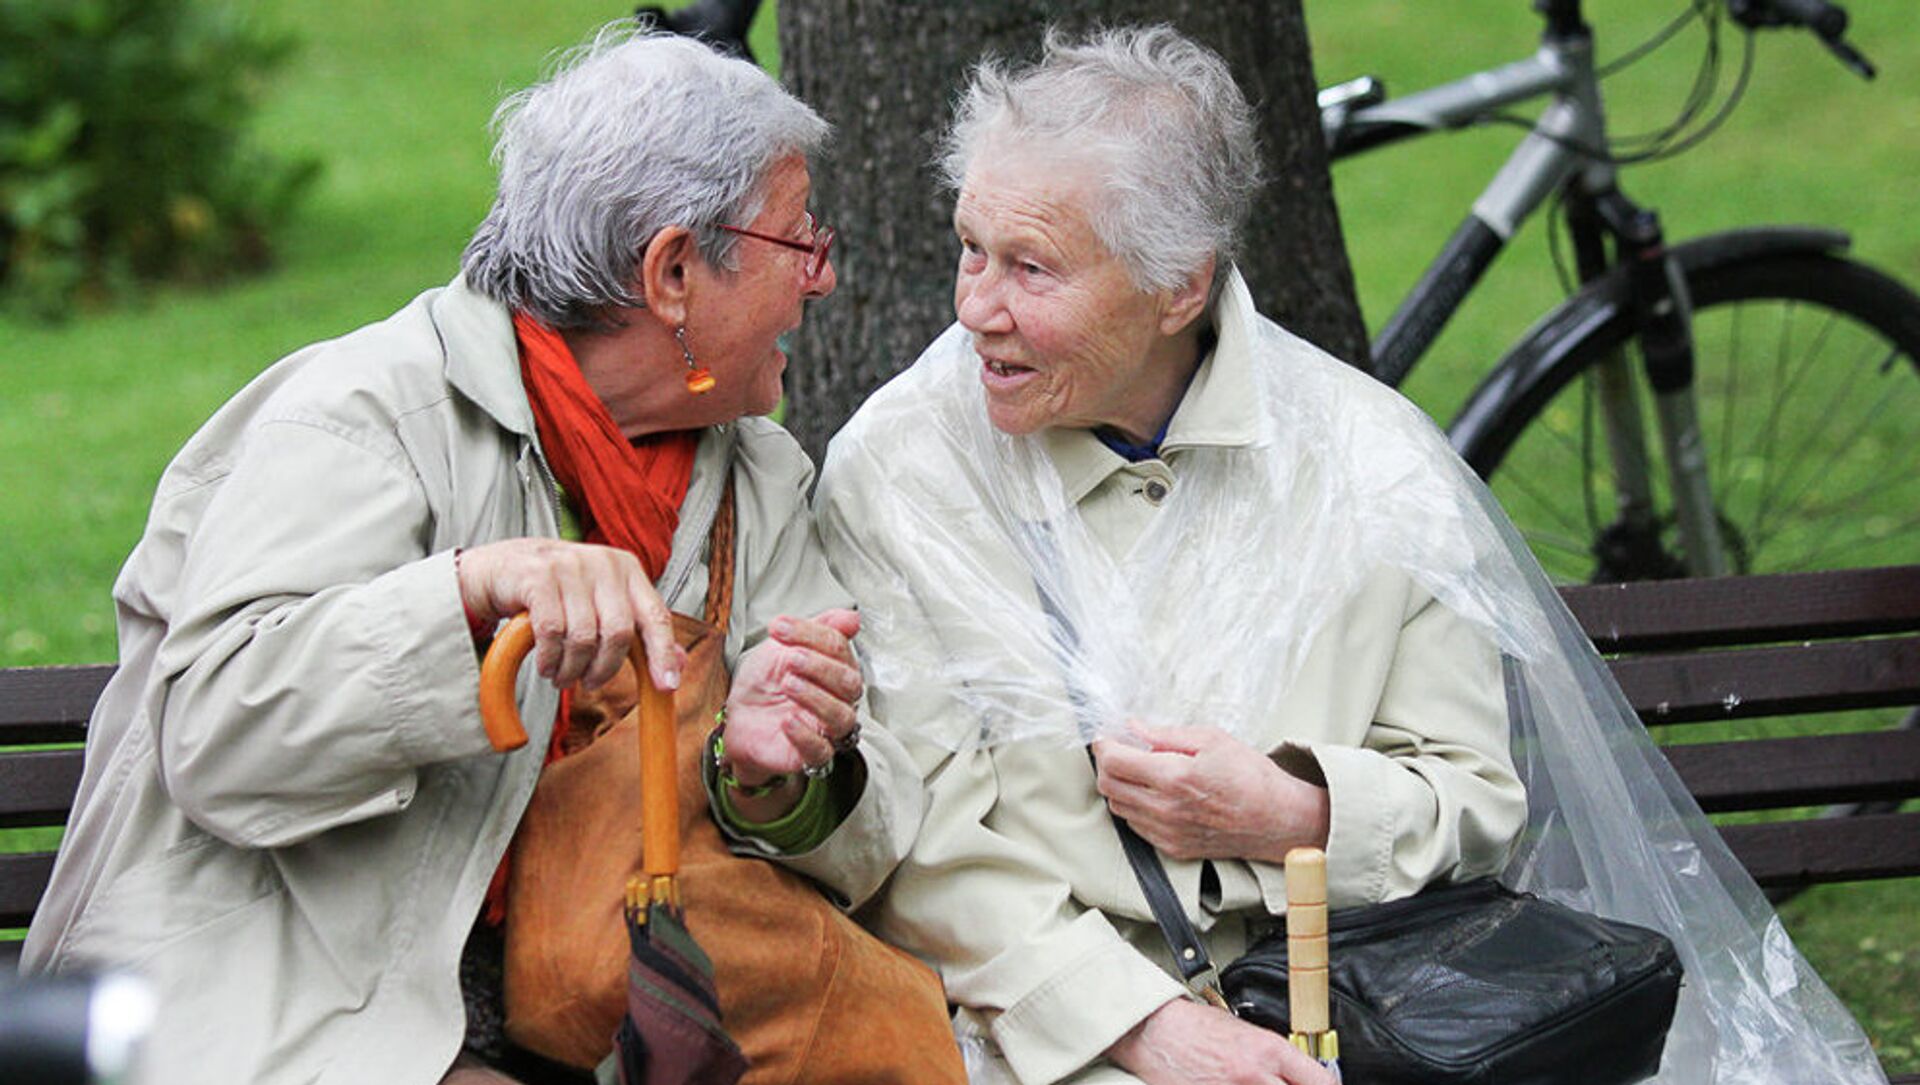 Пожилые женщины в парке - Sputnik Latvija, 1920, 09.04.2021